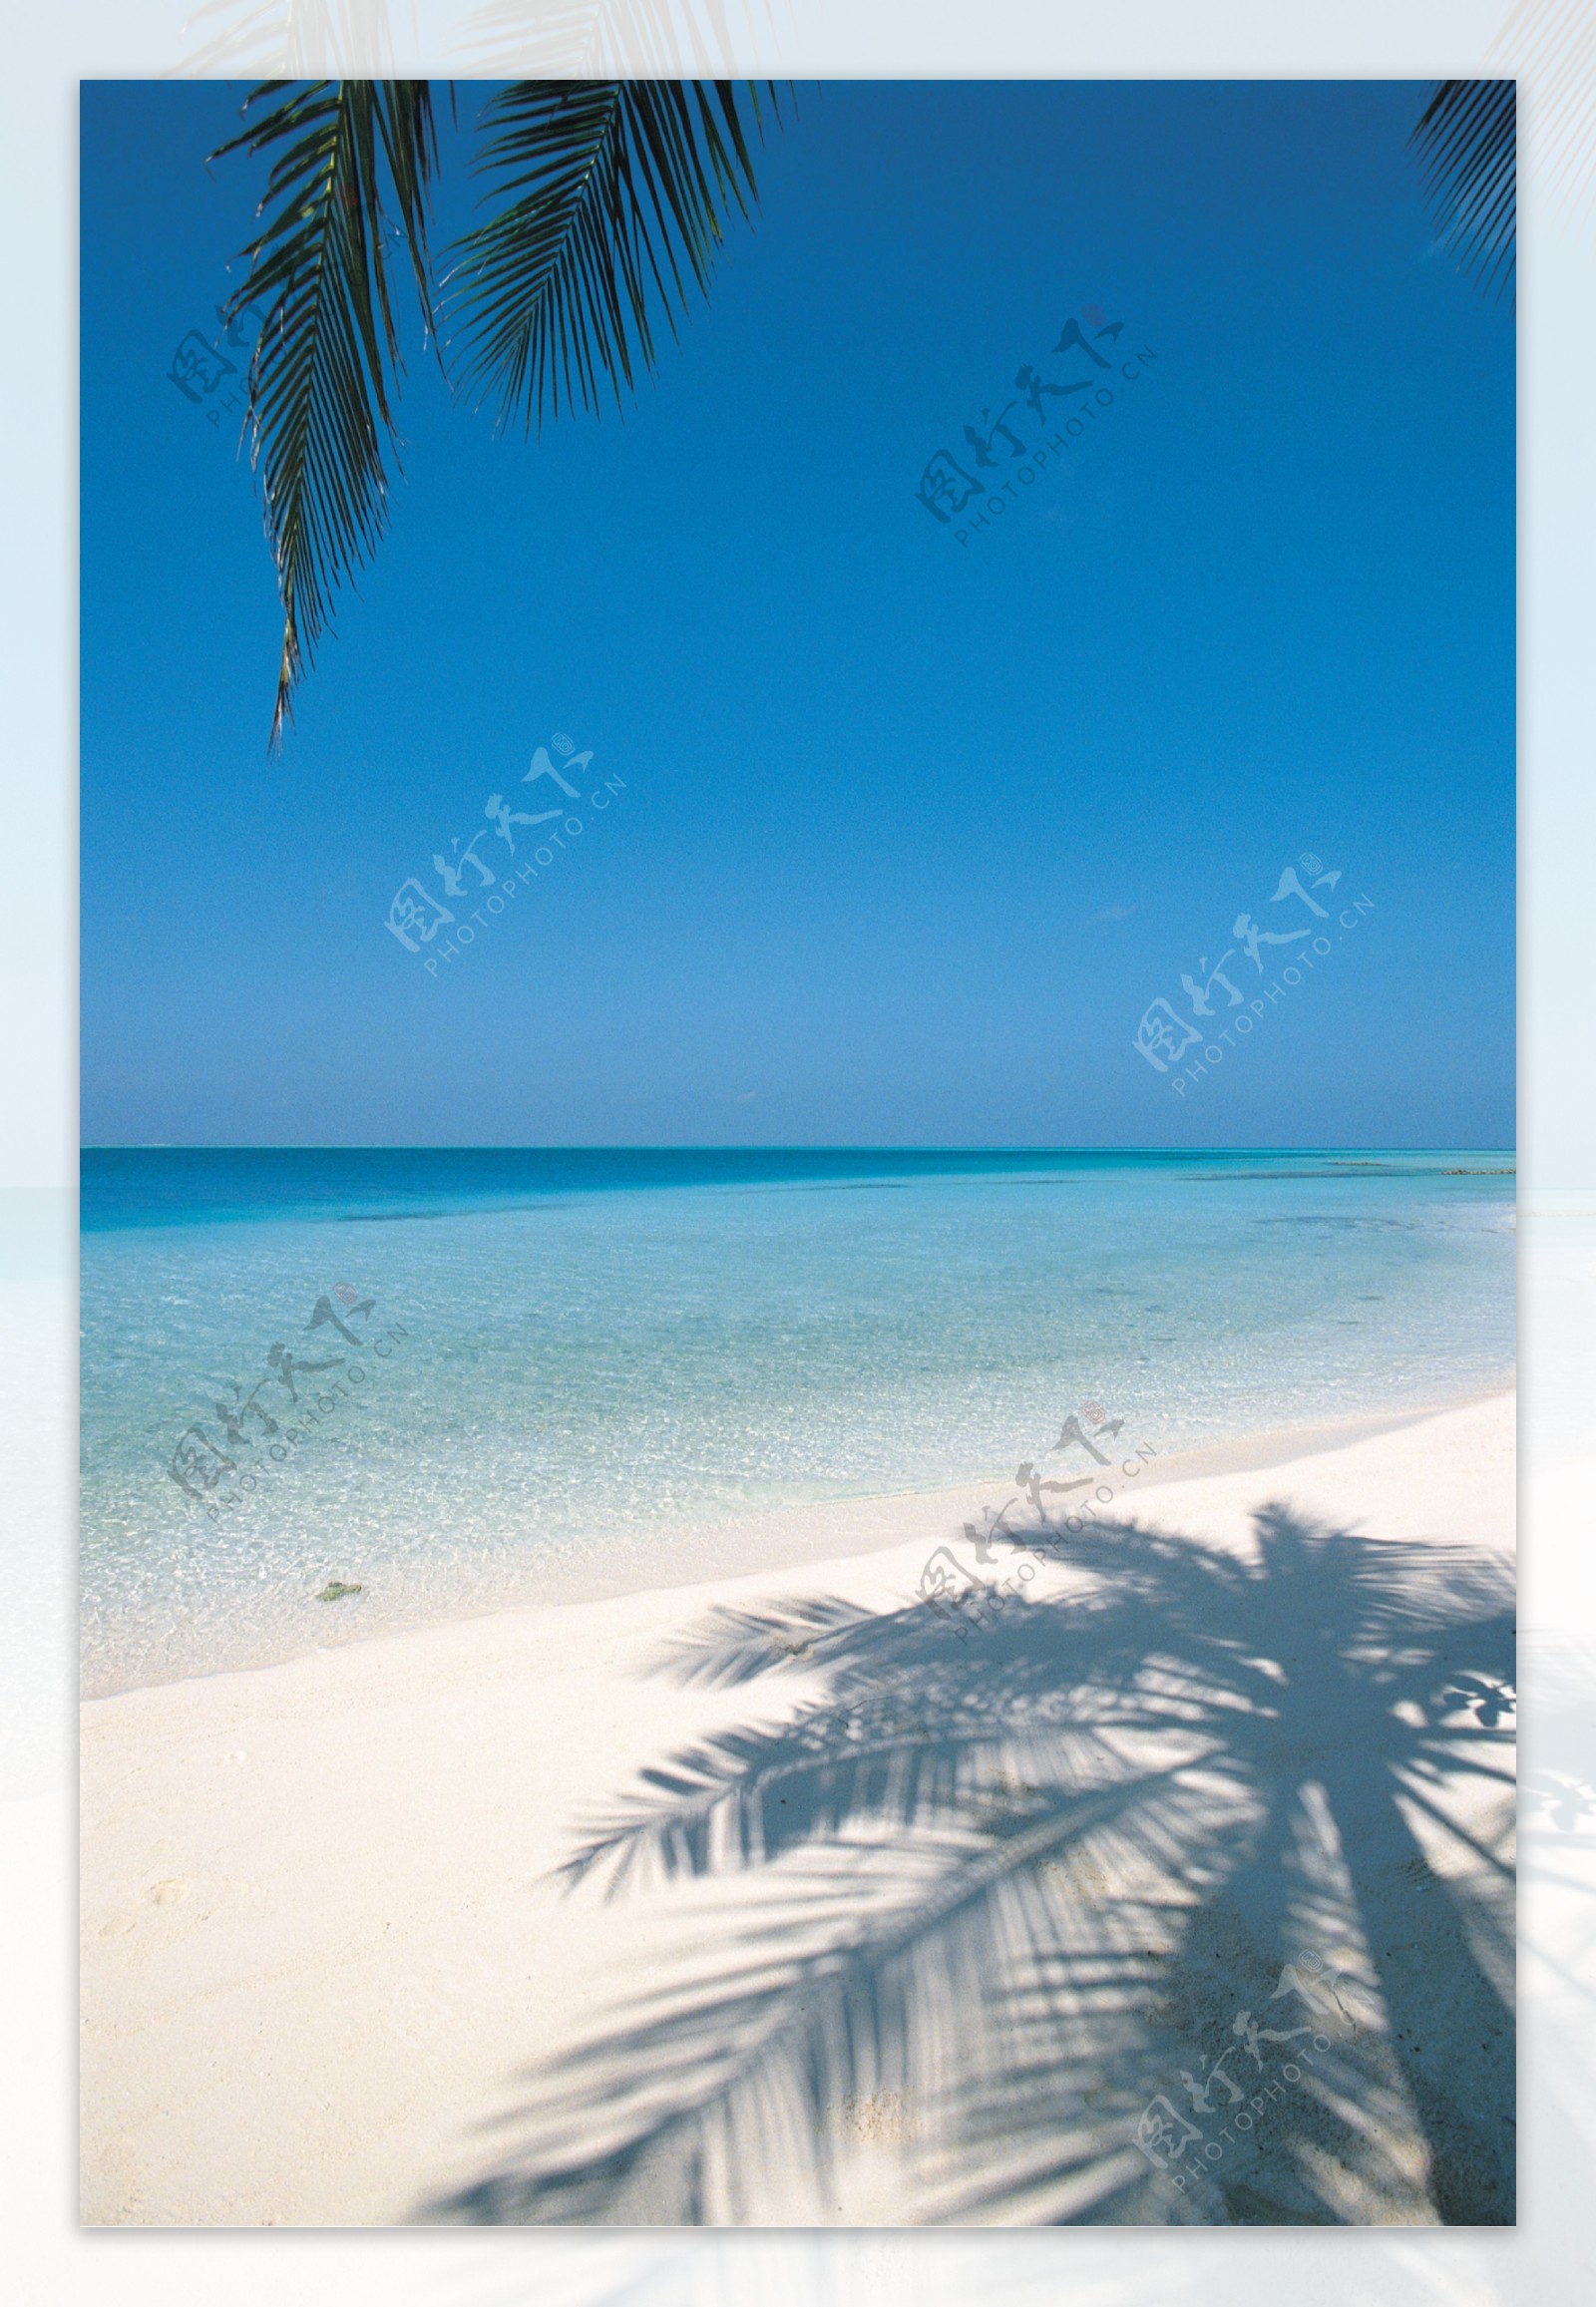 大海岸边椰子倒影图片